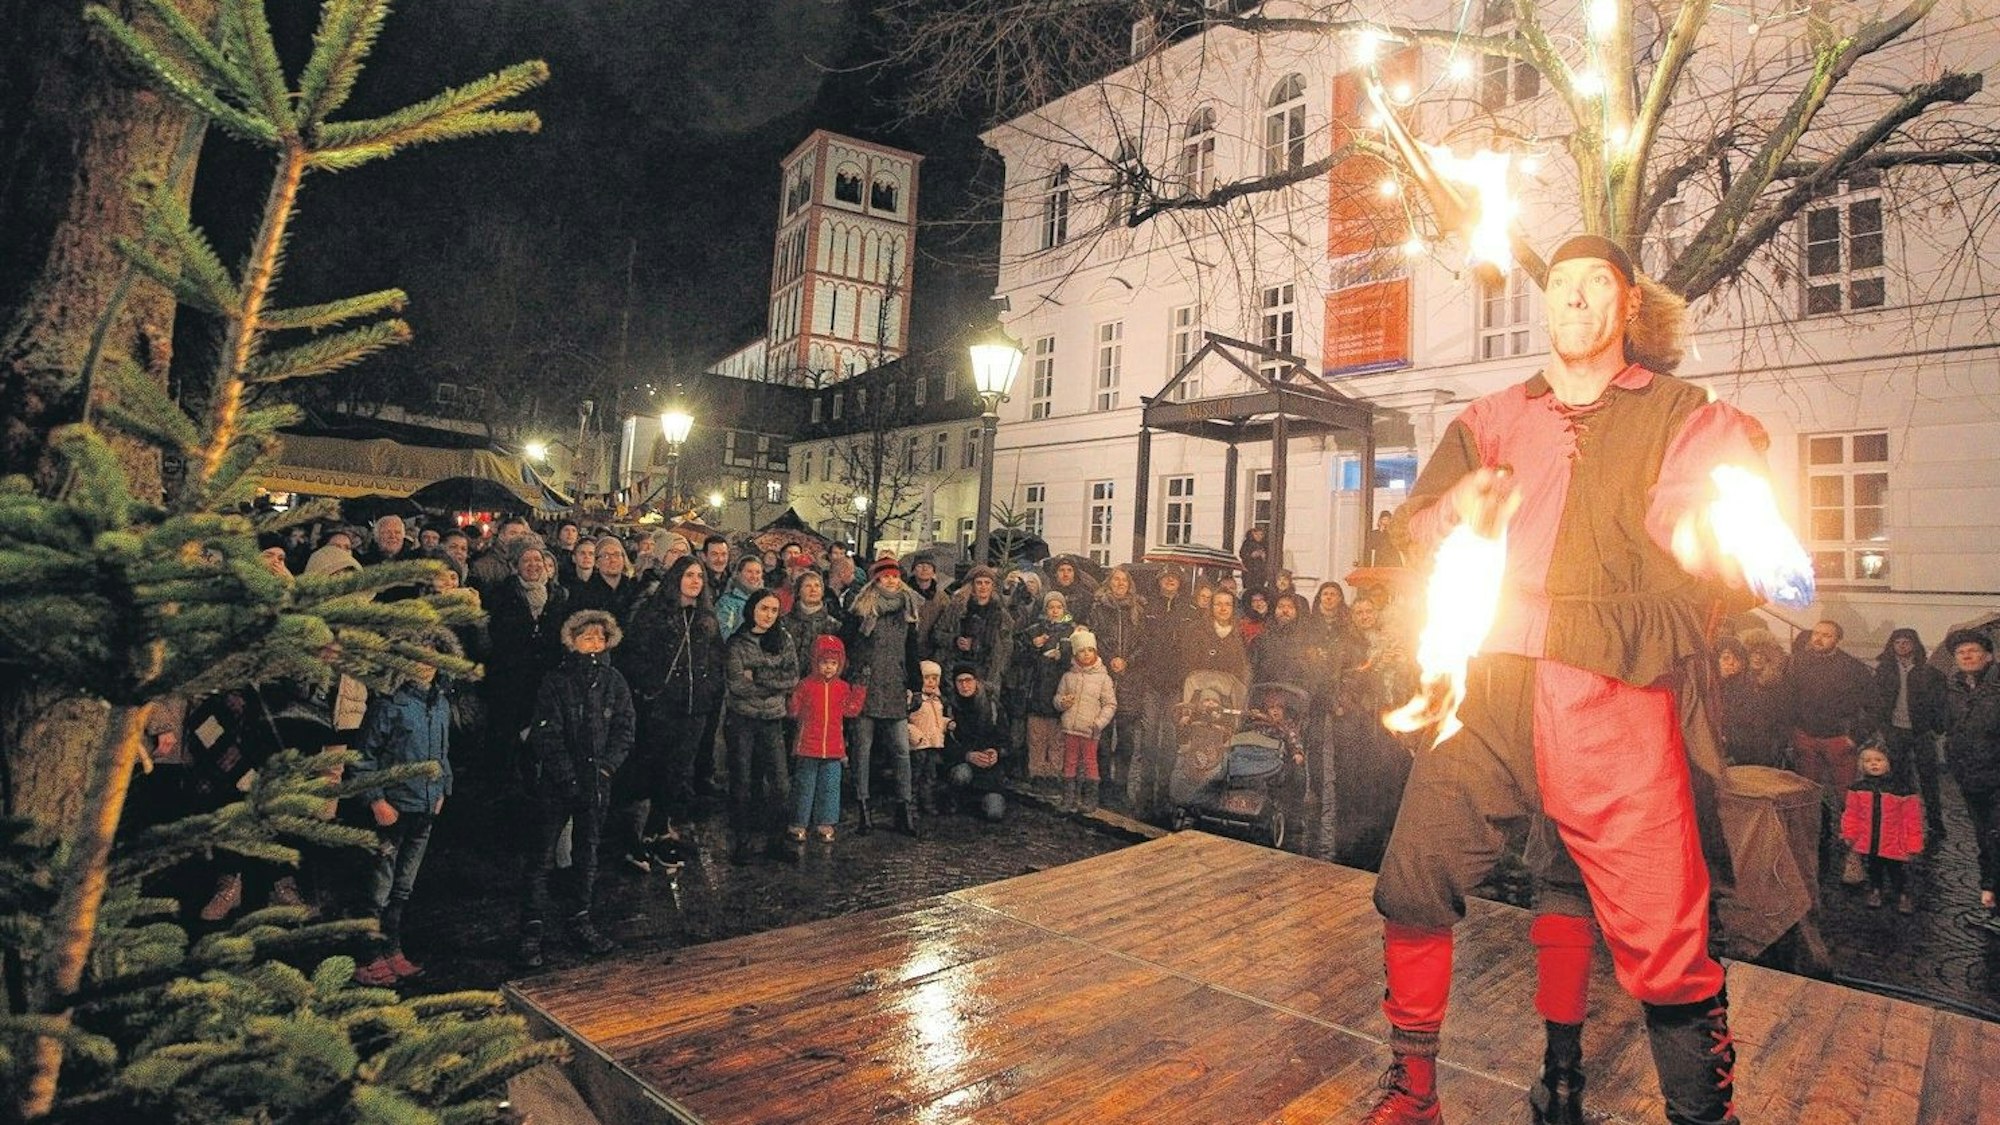 Mittelalterlicher Weihnachtsmarkt Siegburg